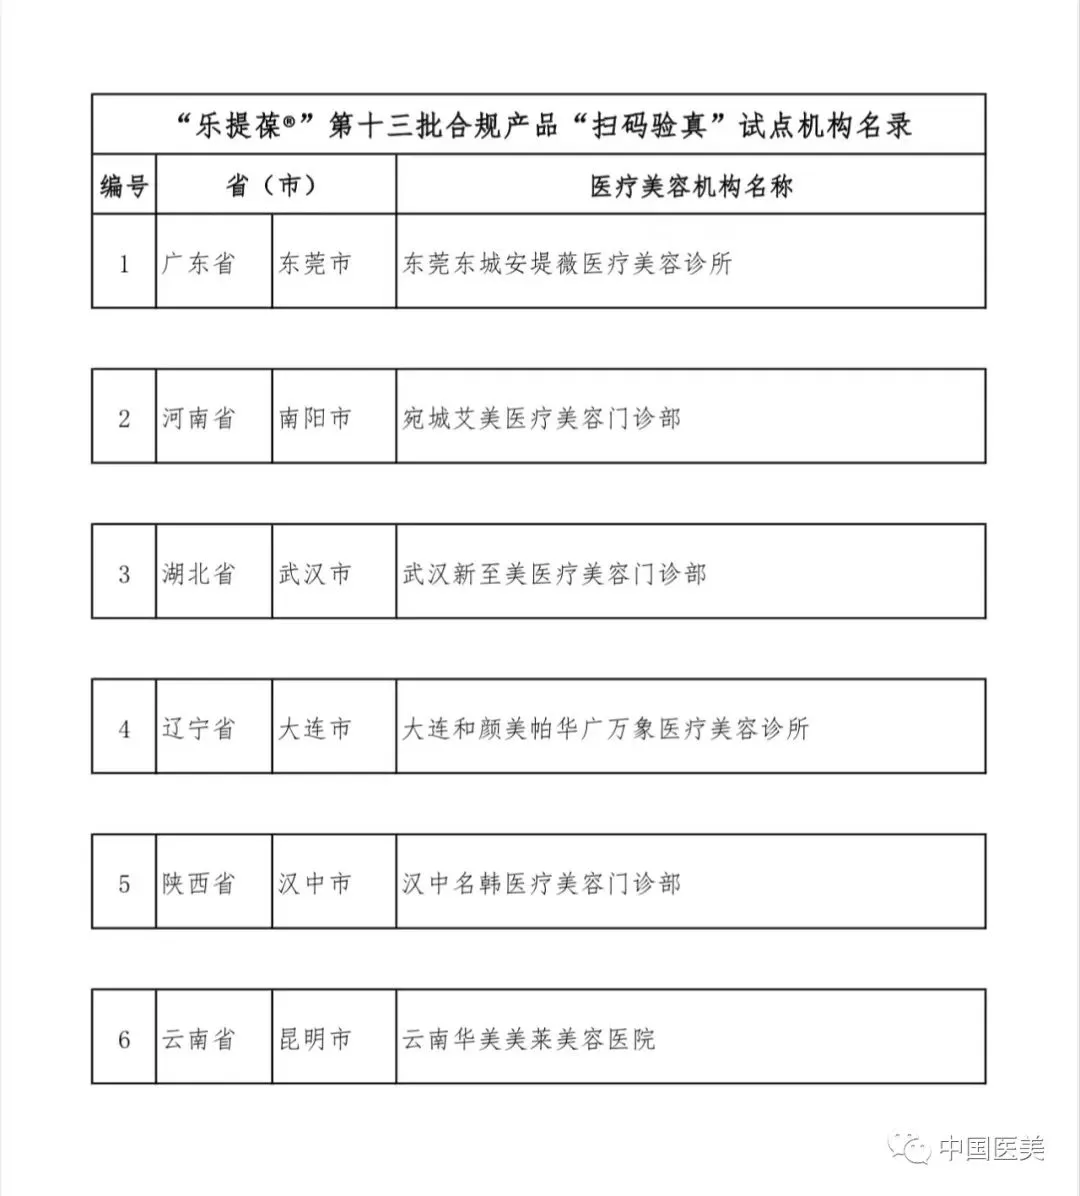 关于公示“乐提葆®”第十三批合规产品“扫码验真”试点机构名单的通知